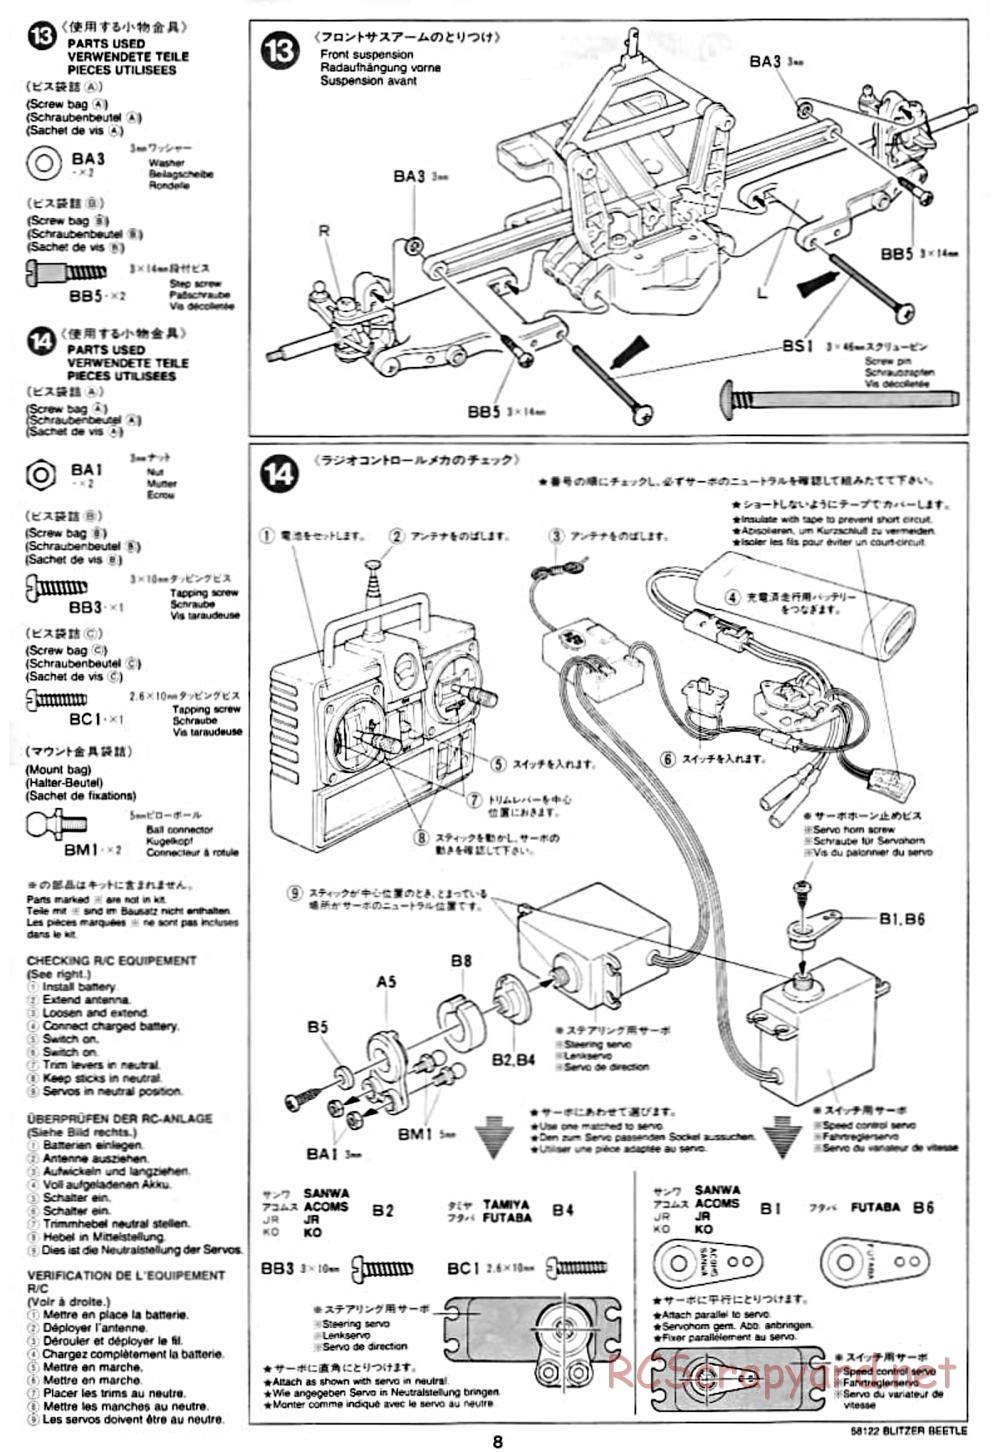 Tamiya - Blitzer Beetle Chassis - Manual - Page 8